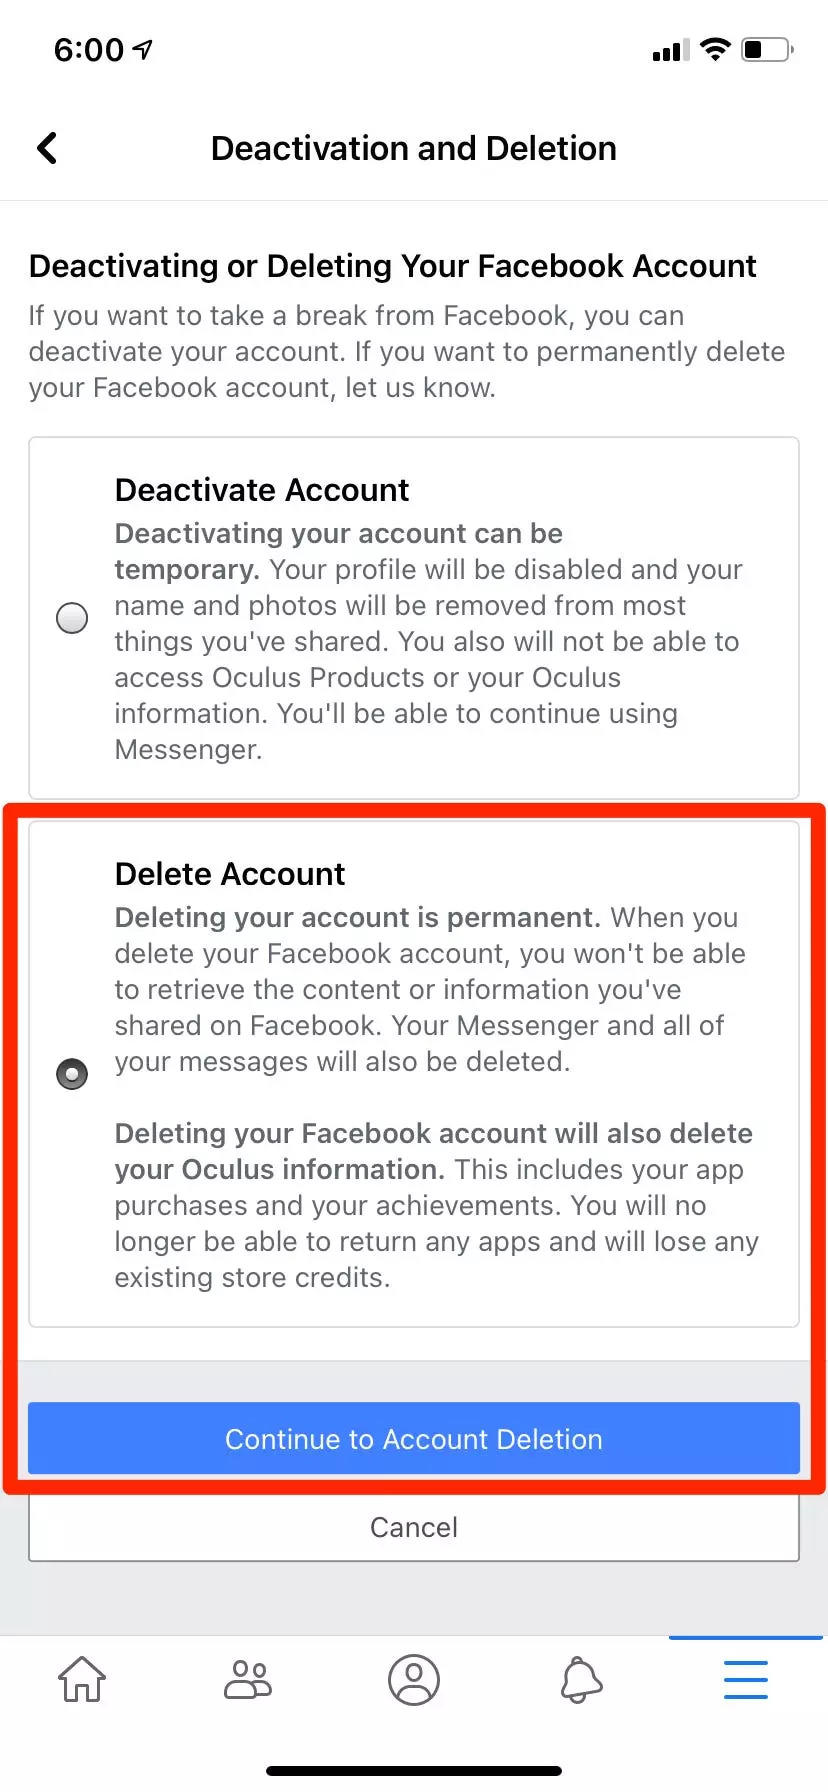 So löschen Sie Ihr Facebook-Konto auf einem Computer oder Telefon und speichern alle Ihre persönlichen Daten